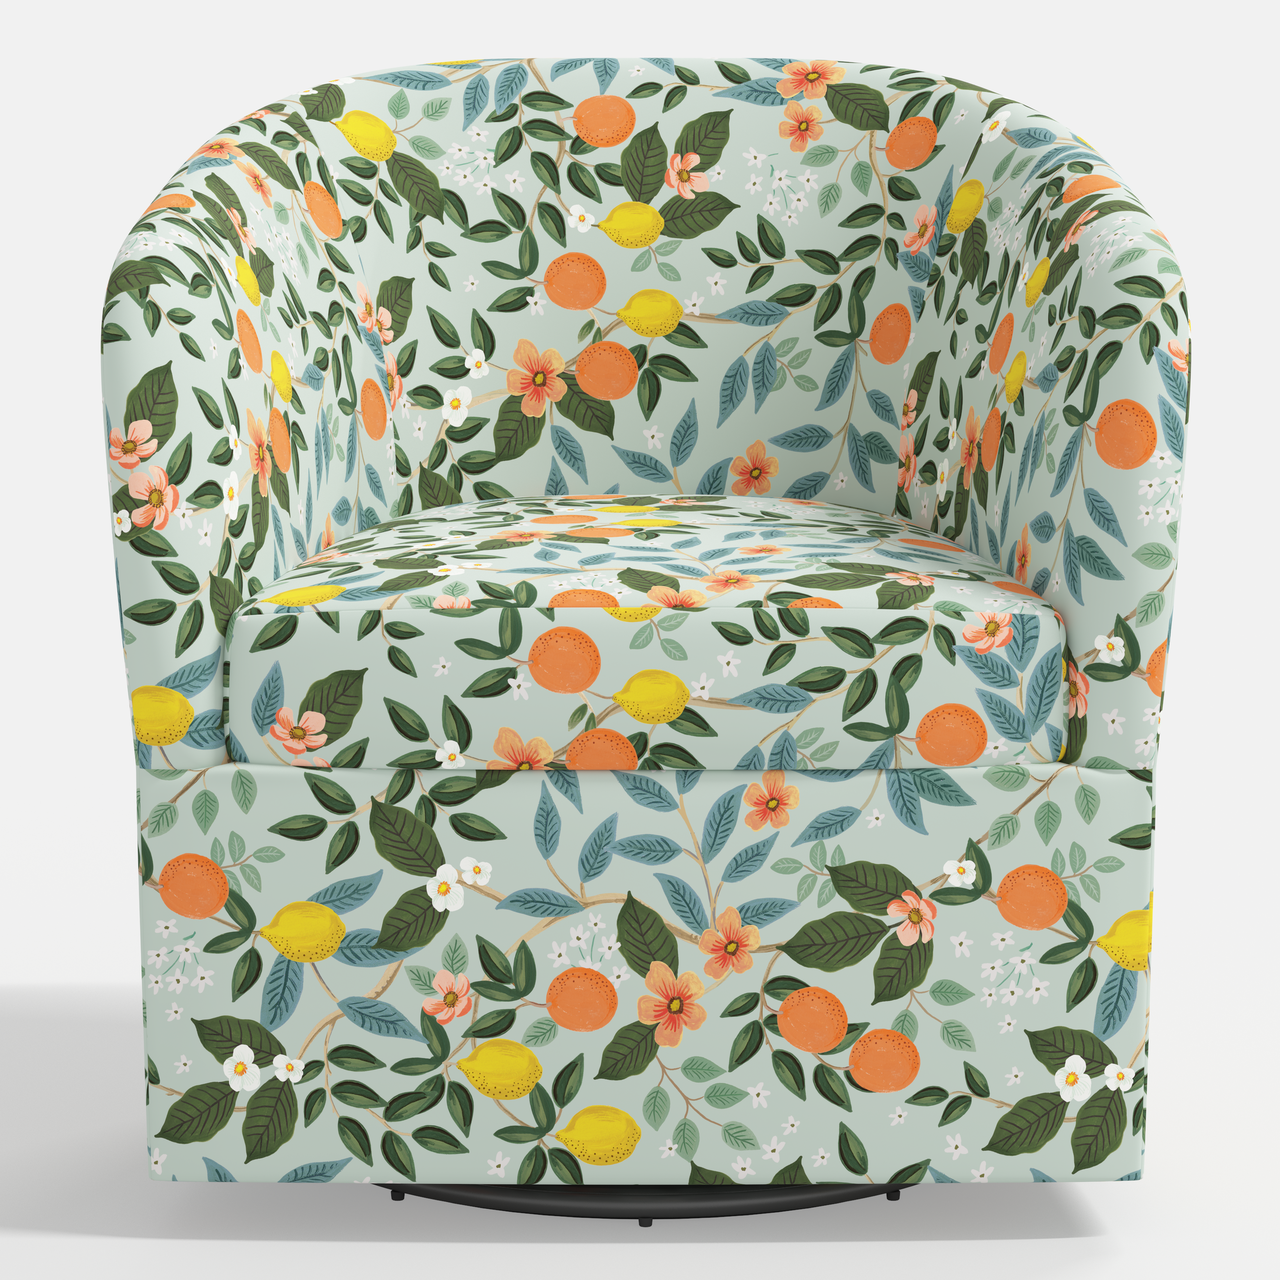 Pembroke Swivel Chair